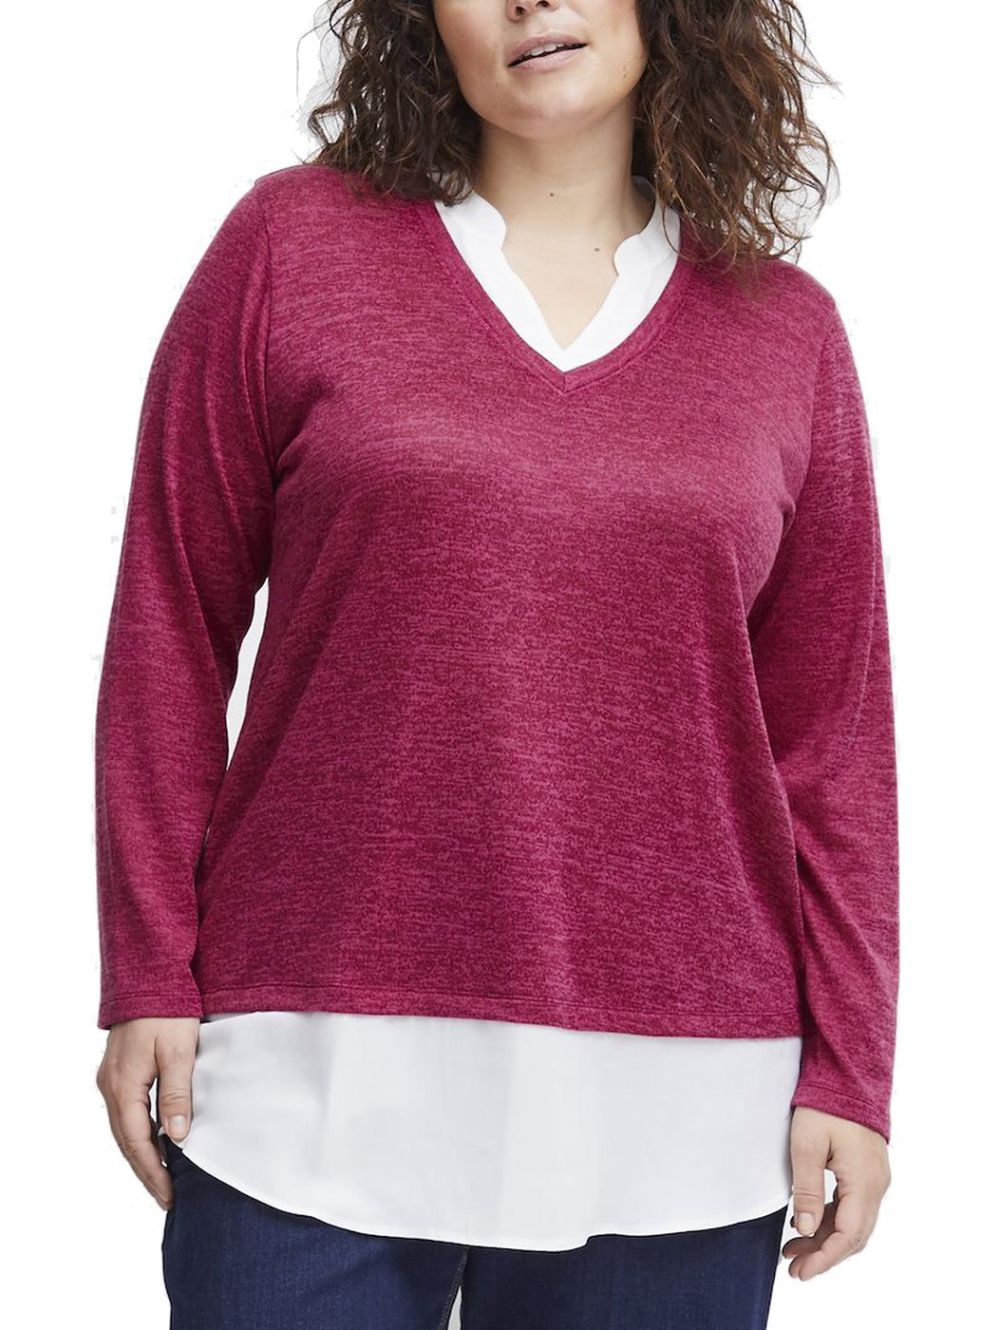 blouse knit FRANSA Melange Berry red Very V-neck 20611407-1823361 Women\'s